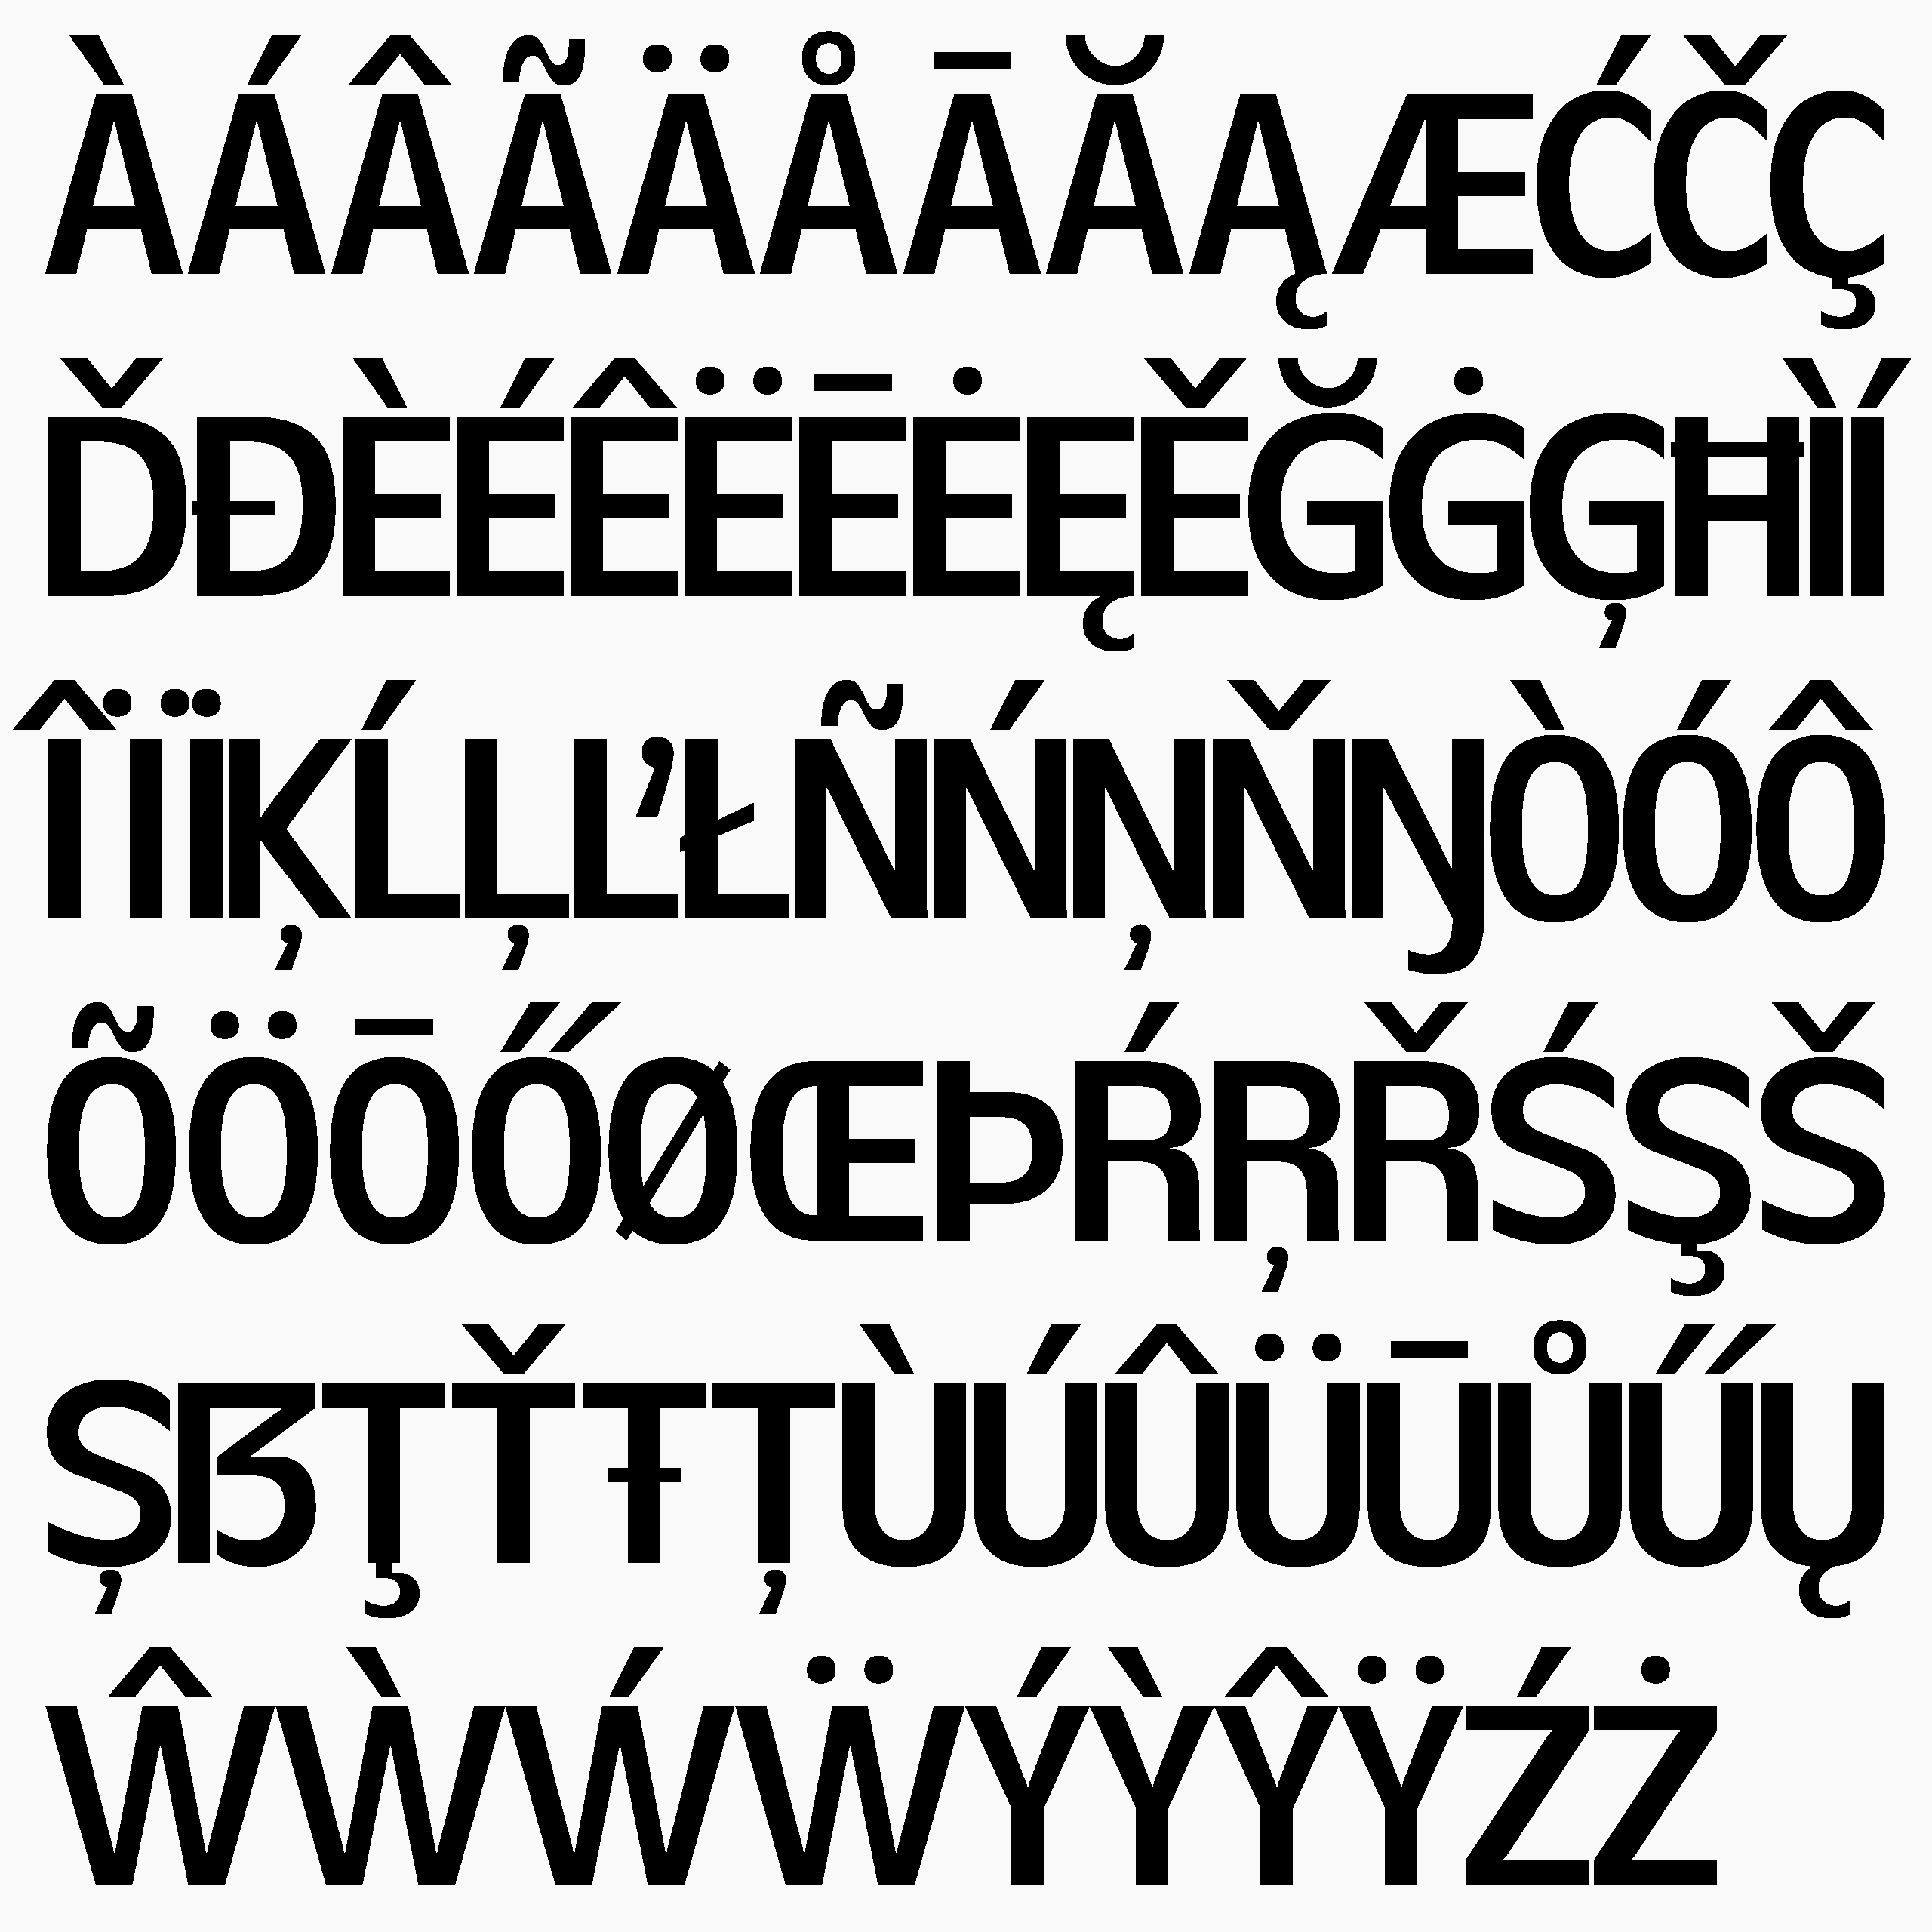 Daniel-Stuhlpfarrer_typedesign_graphicdesign_custom-font_custom-typeface_typography_ds-zirbal-4